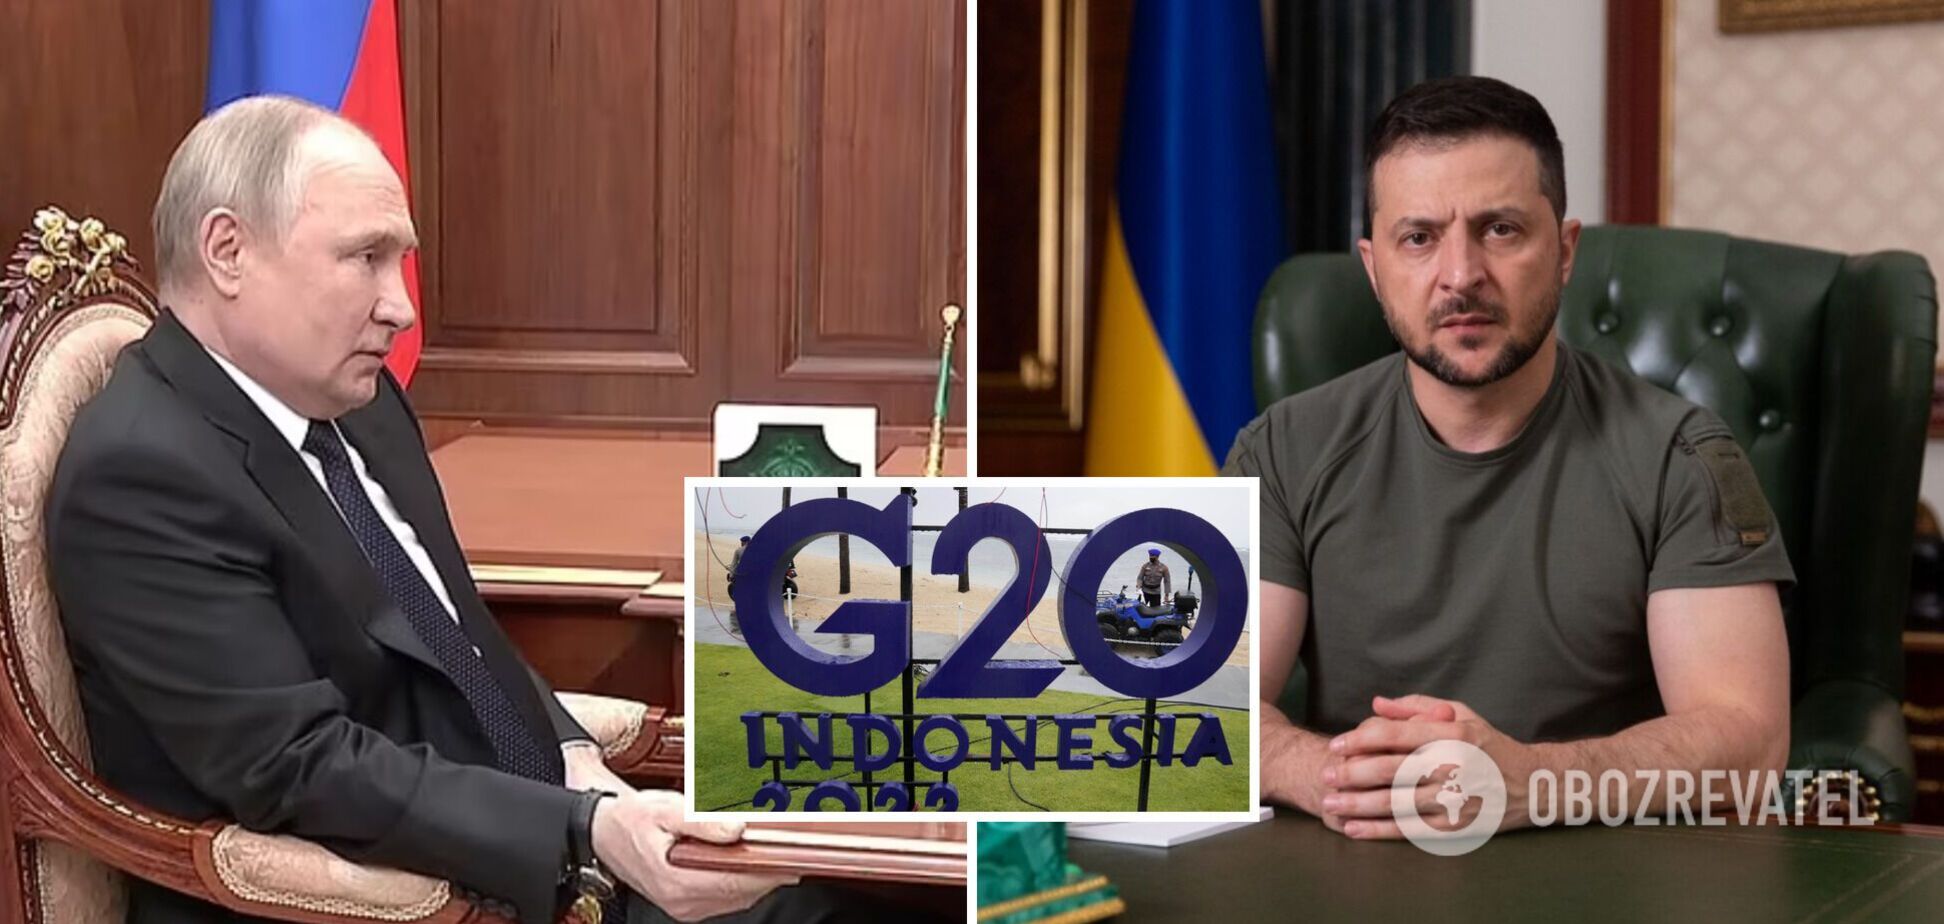 Путин и Зеленский согласились принять участие в саммите G20 в Индонезии: в офисе президента прокомментировали информацию СМИ